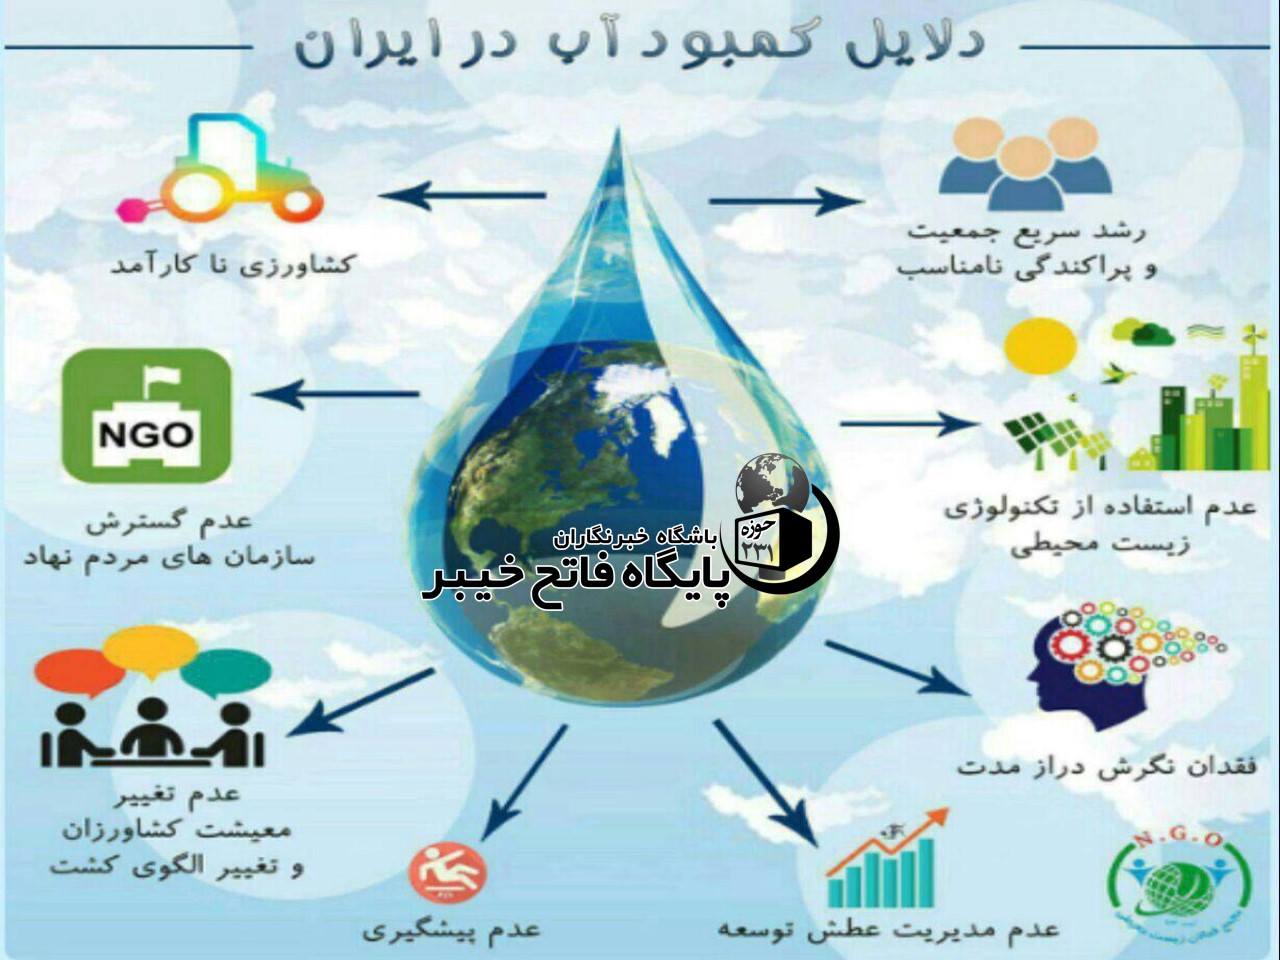 علت اصلی کمبود آب در ایران
